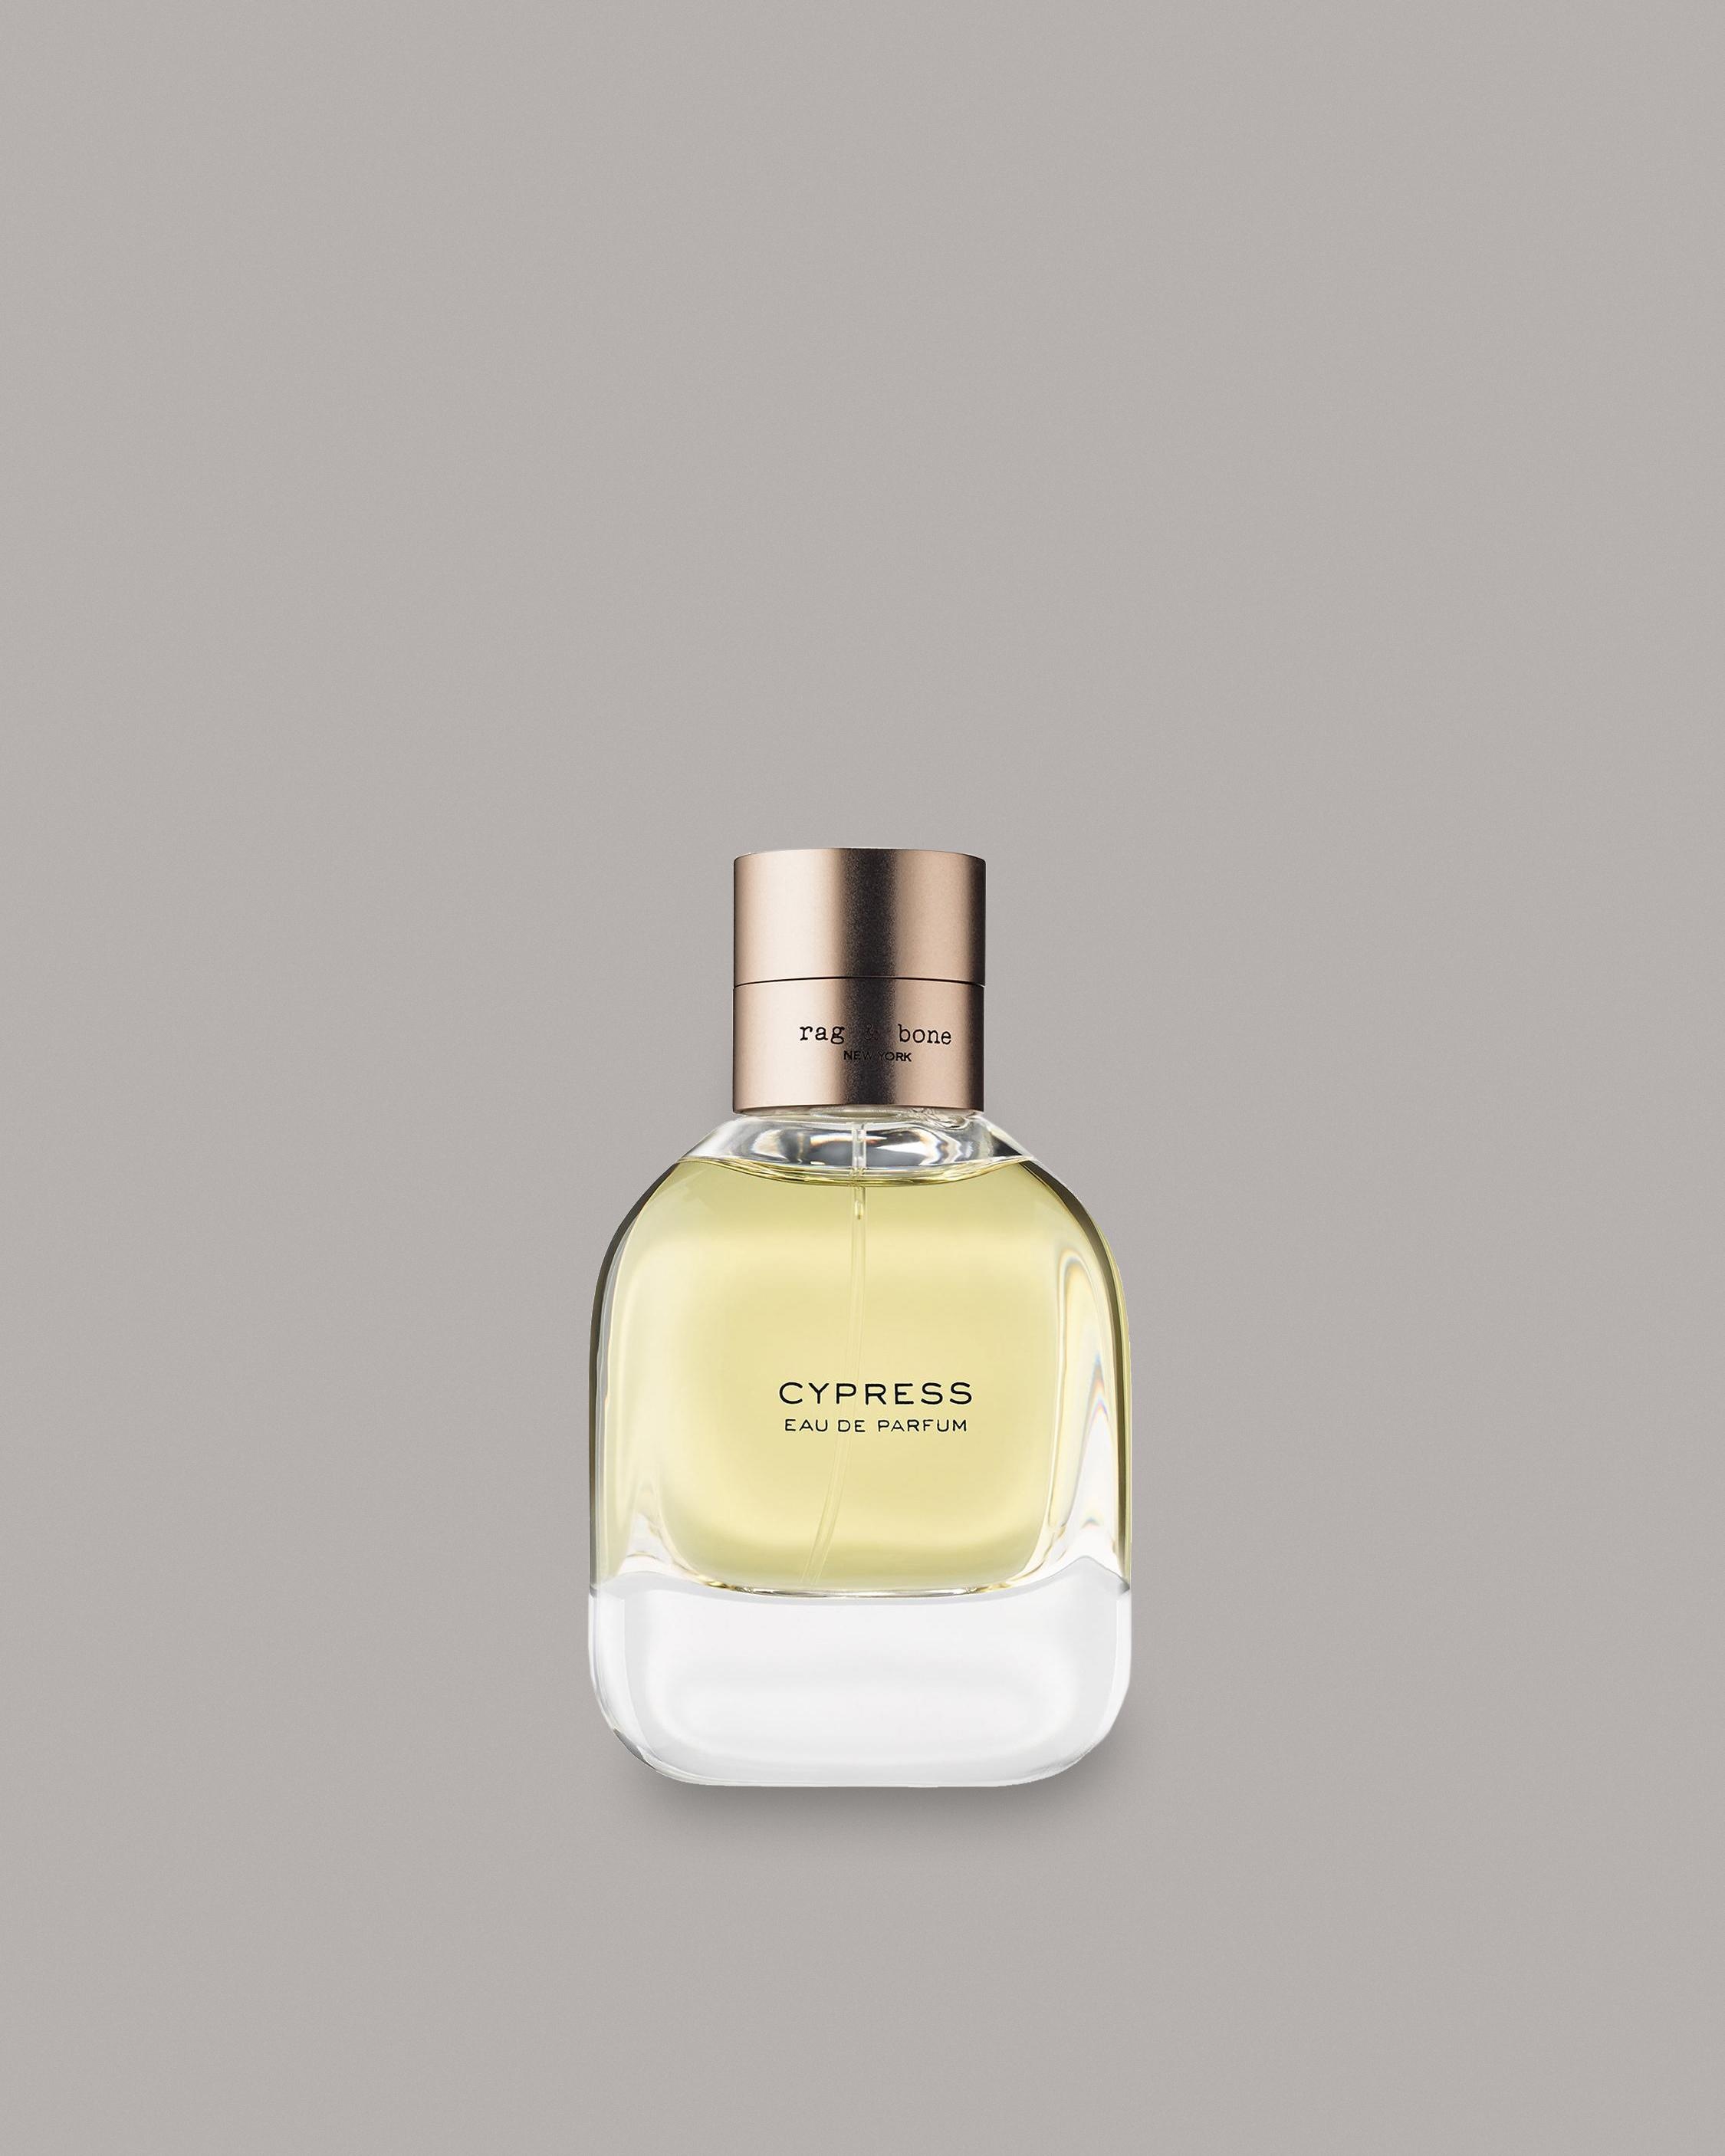 CYPRESS 50ML
Fragrance - 1